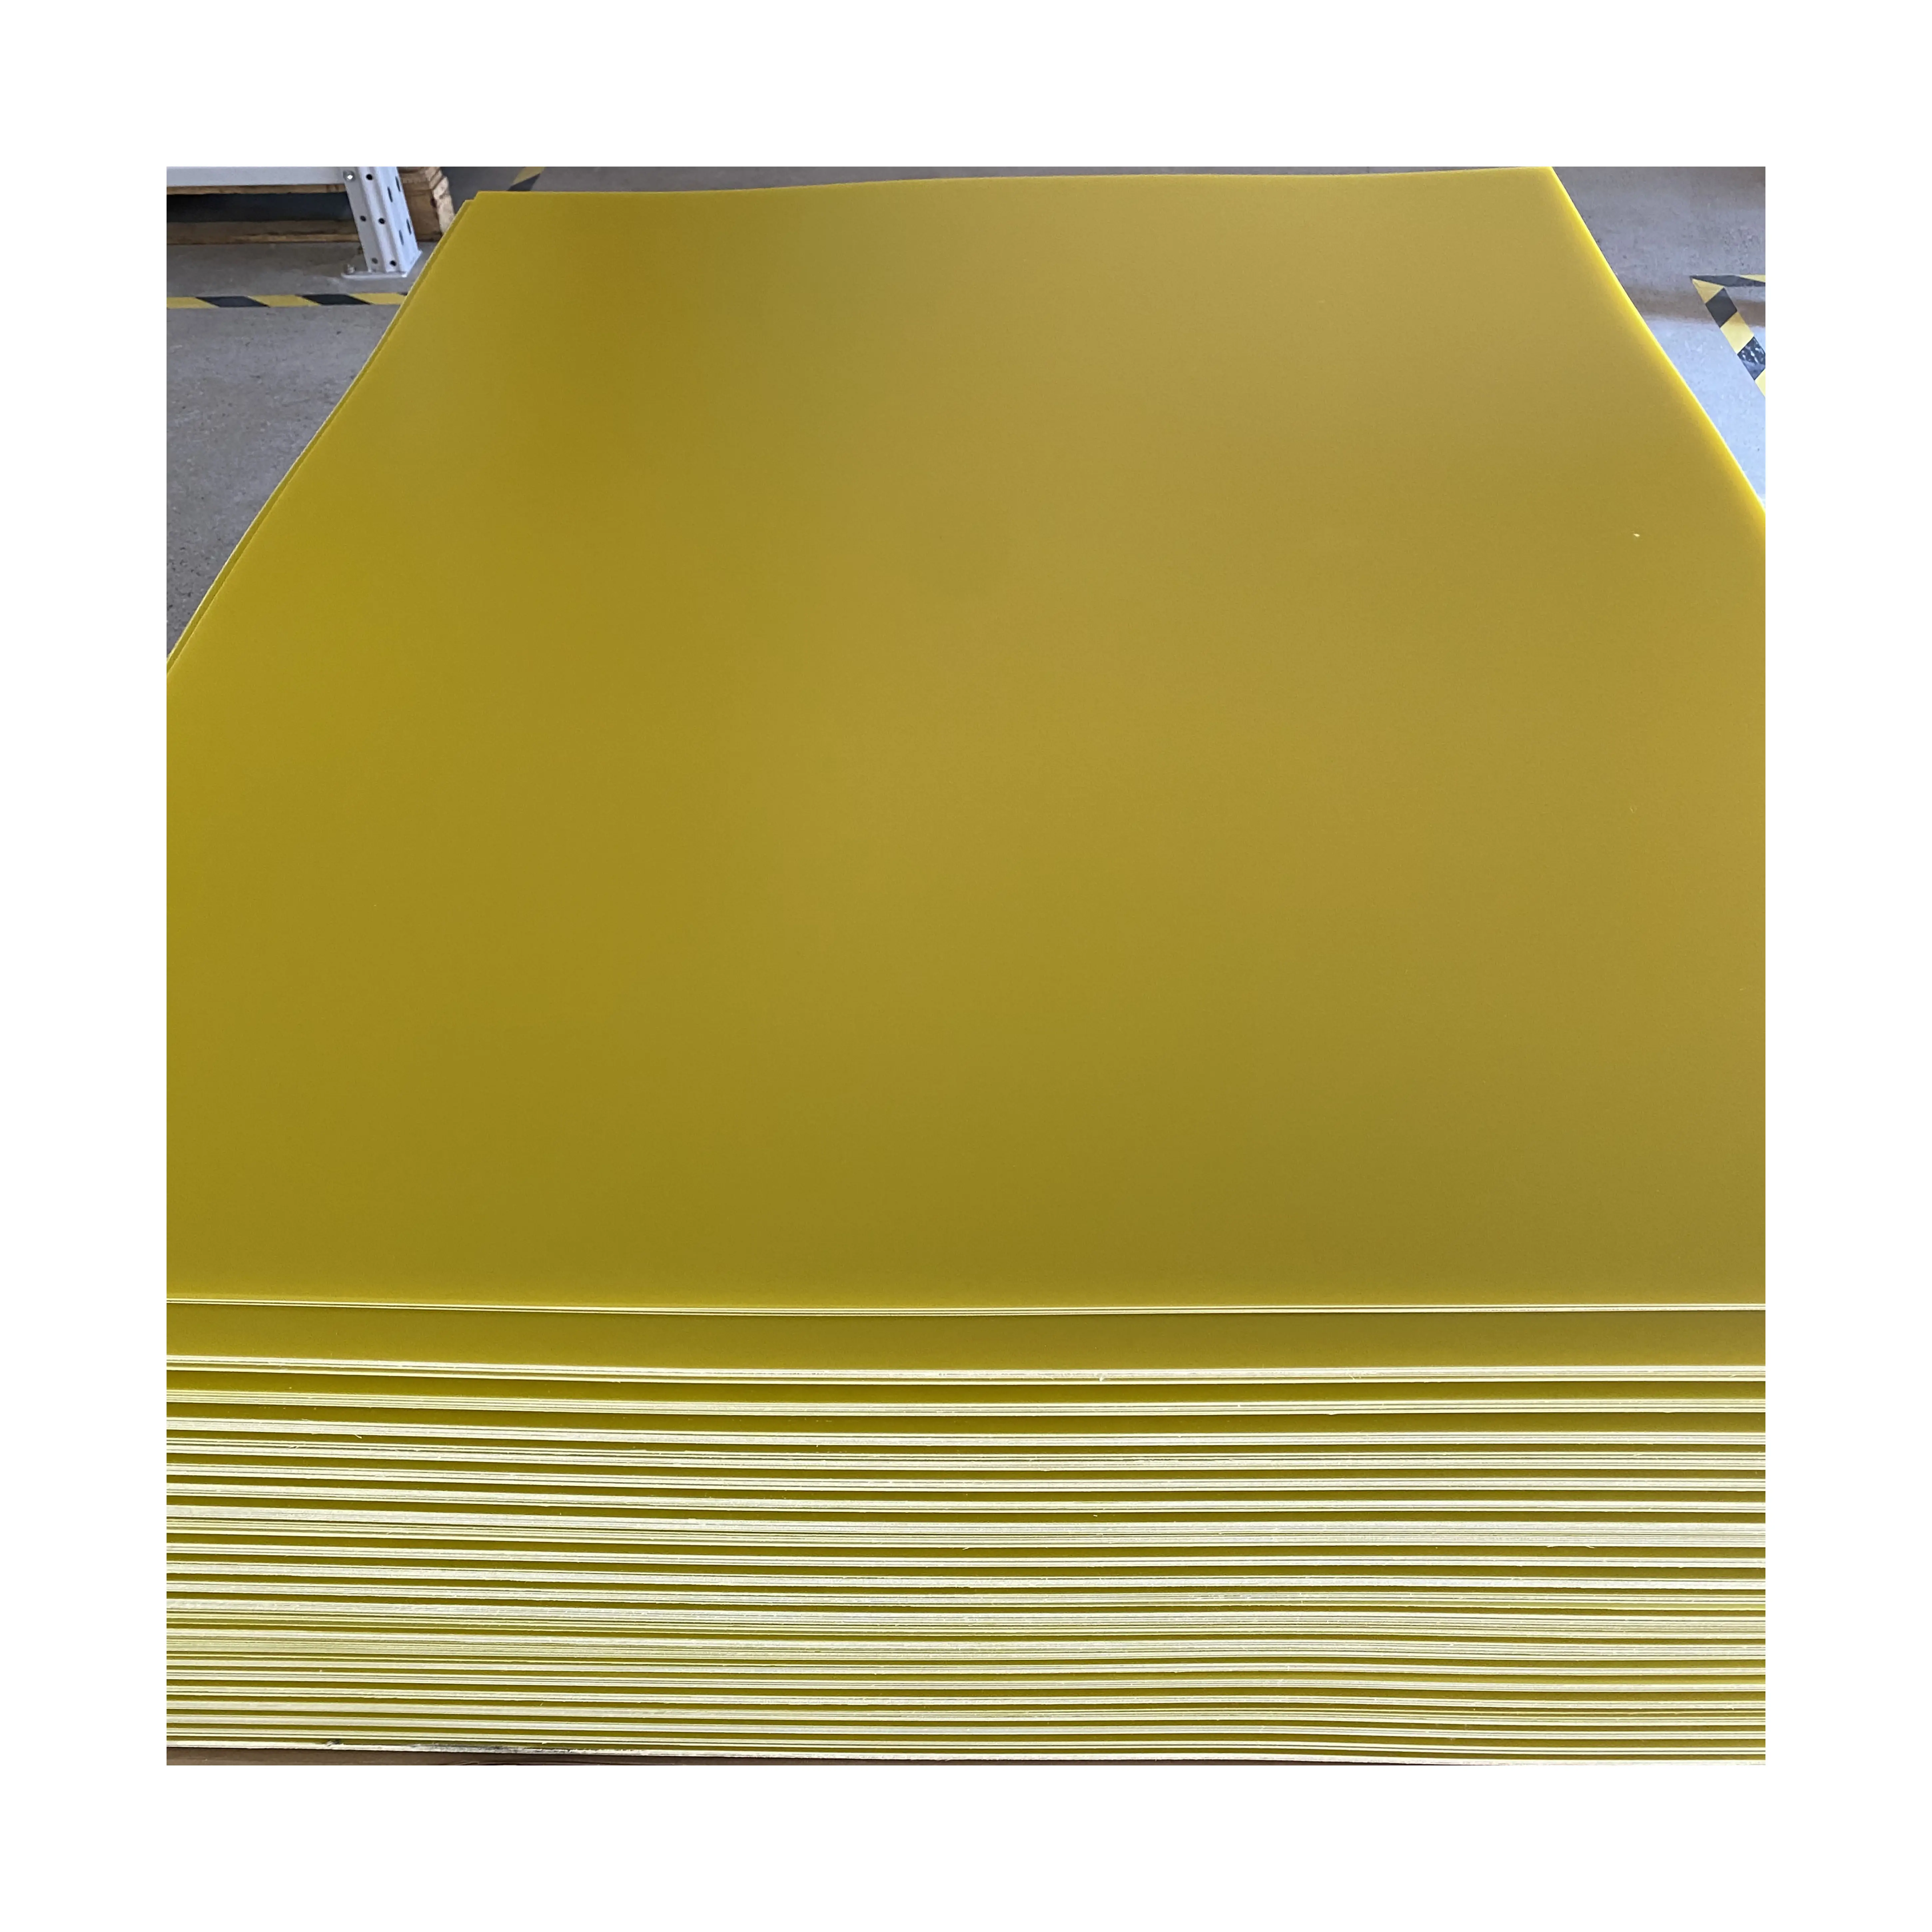 Fabrika FR4 sarı epoksi reçine levha 5.0mm ve fiberglas kurulu 5.0mm üretiminde uzmanlaşmıştır